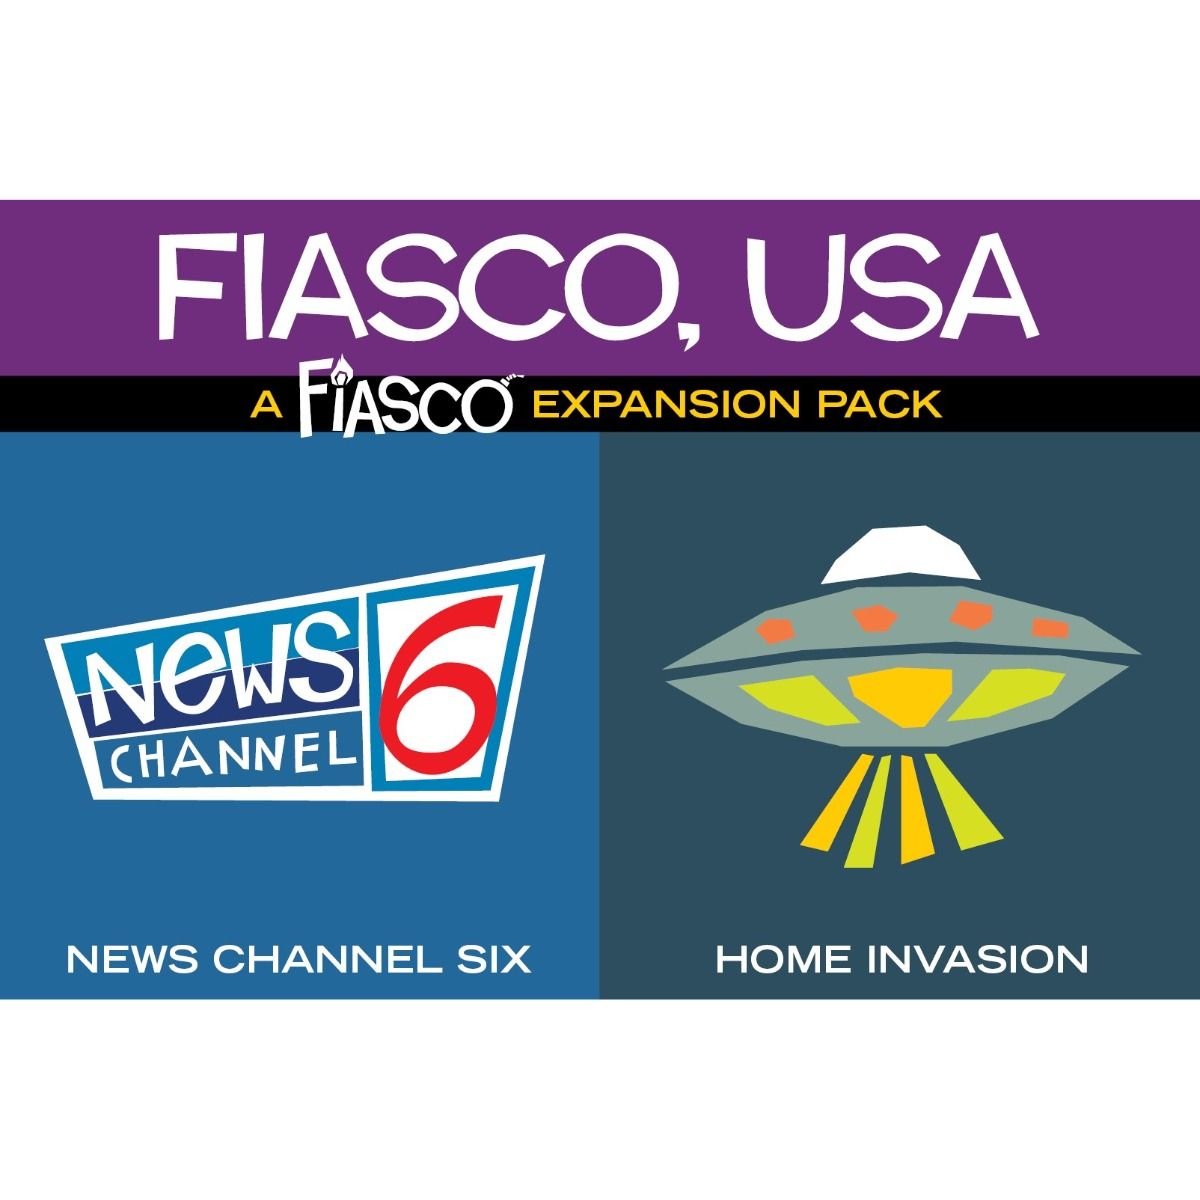 Fiasco Expansion Pack: Fiasco, USA